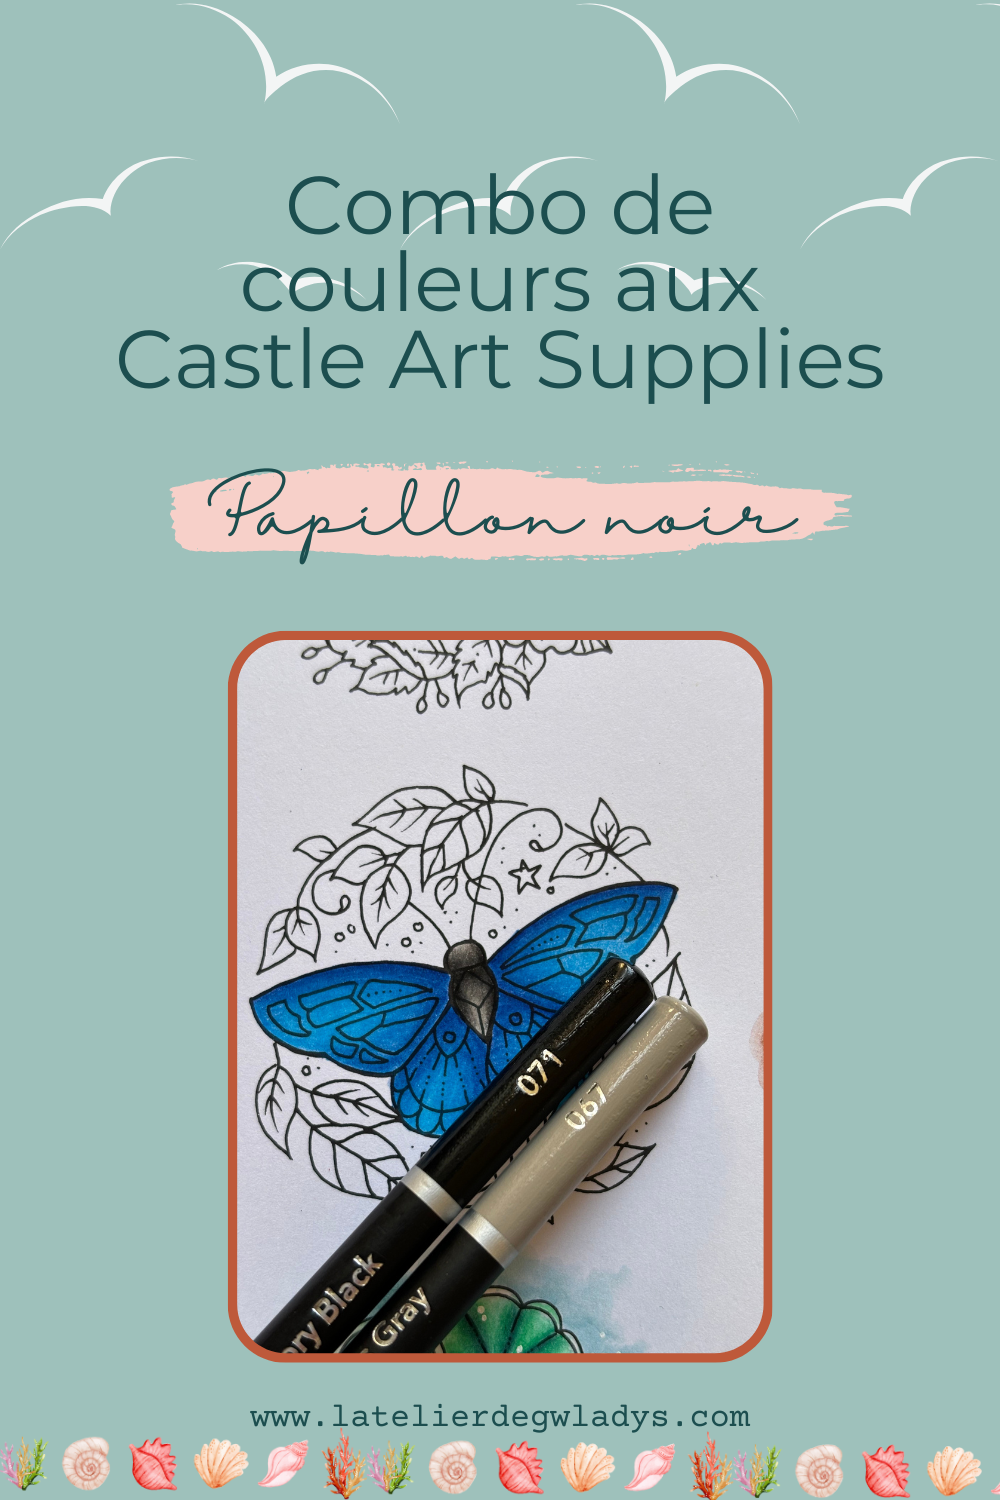 l-atelier-de-gwladys-combo-couleurs-castle-art-supplies-papillon-noir.png